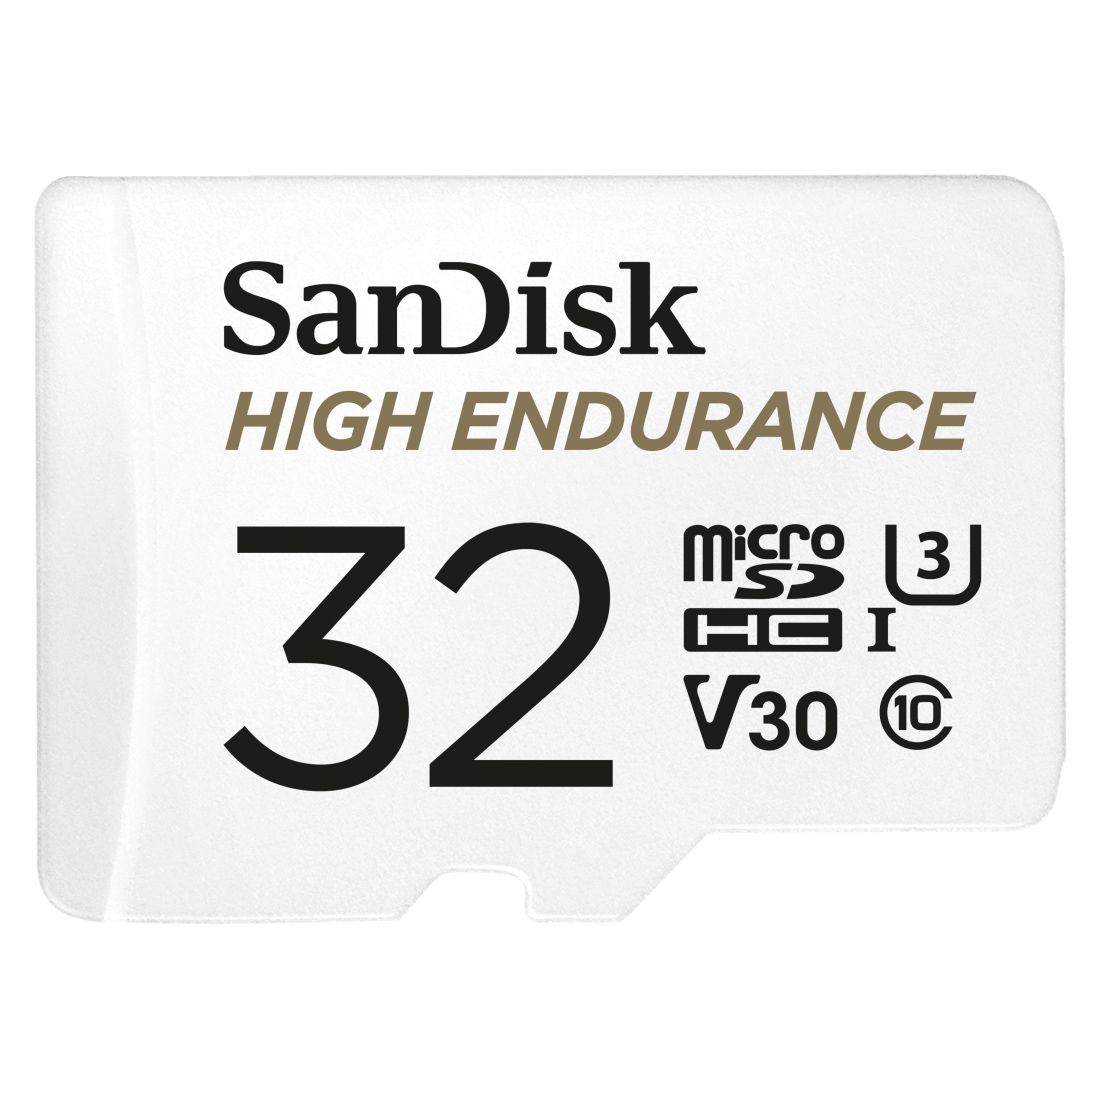 SanDisk microSDHC™ 32GB memóriakártya, High Endurance (olvasási sebesség: 100 MB/s, írási sebesség: 40 MB/s) V30, A2, C10, U3, Full HD, 4K